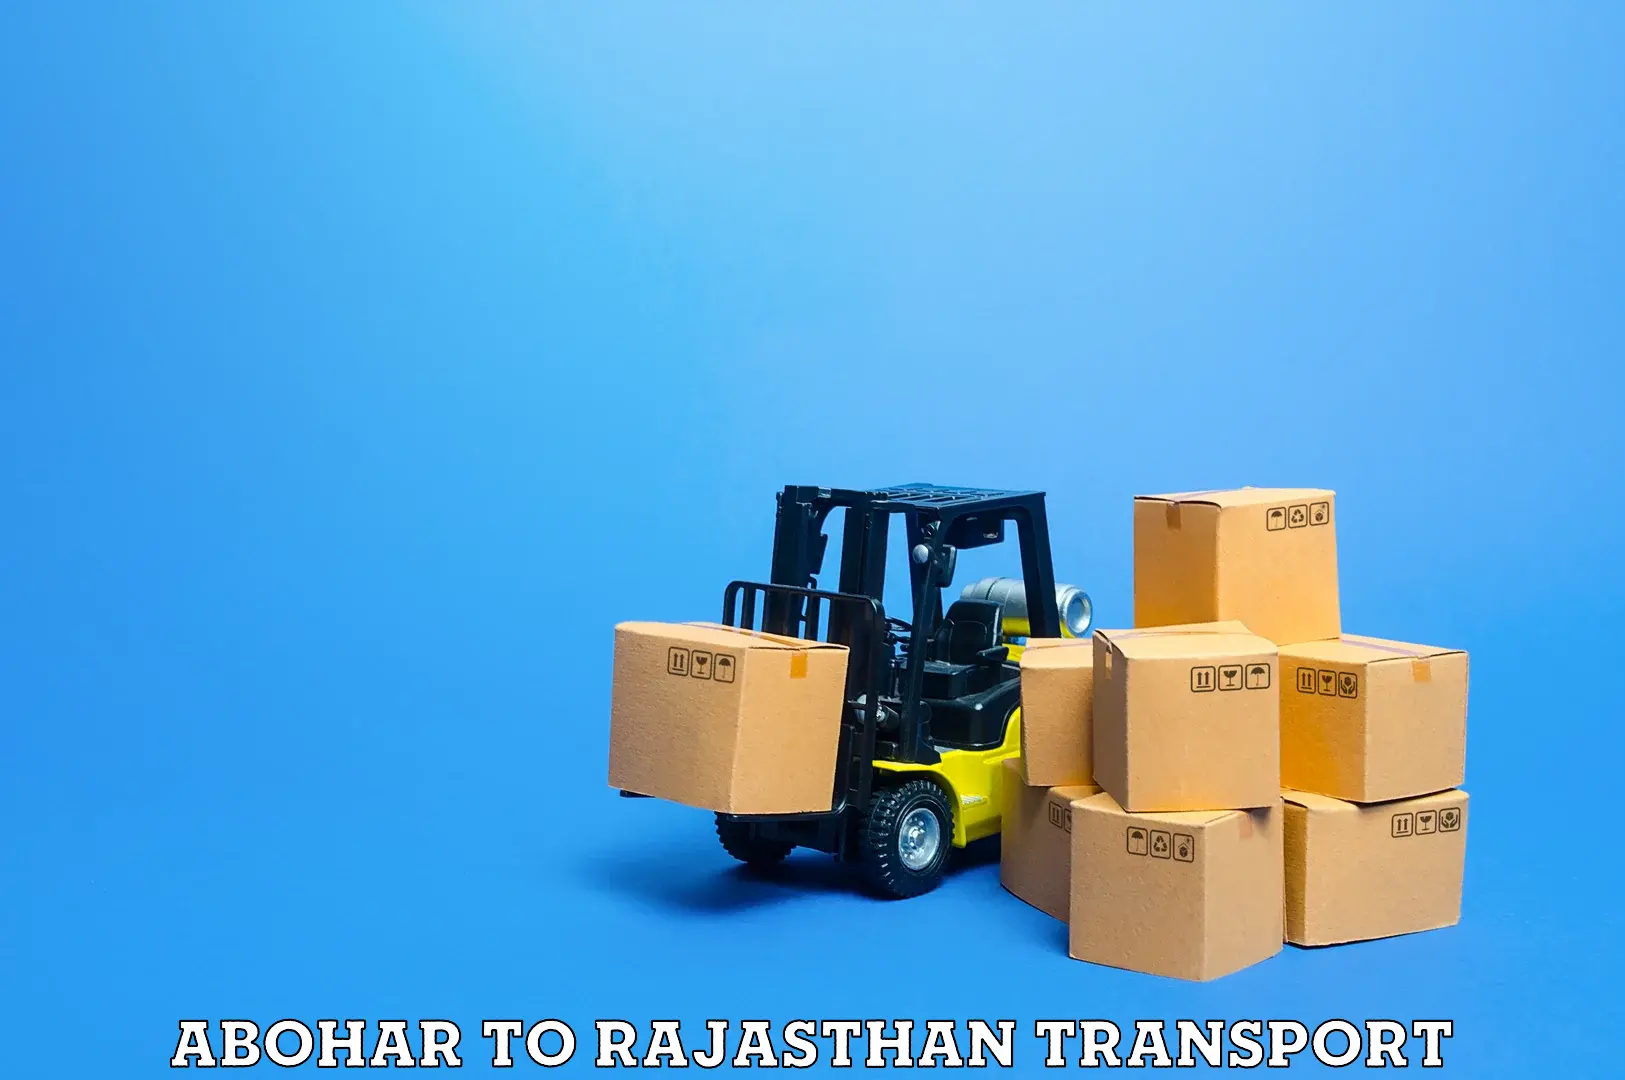 Furniture transport service Abohar to Banar